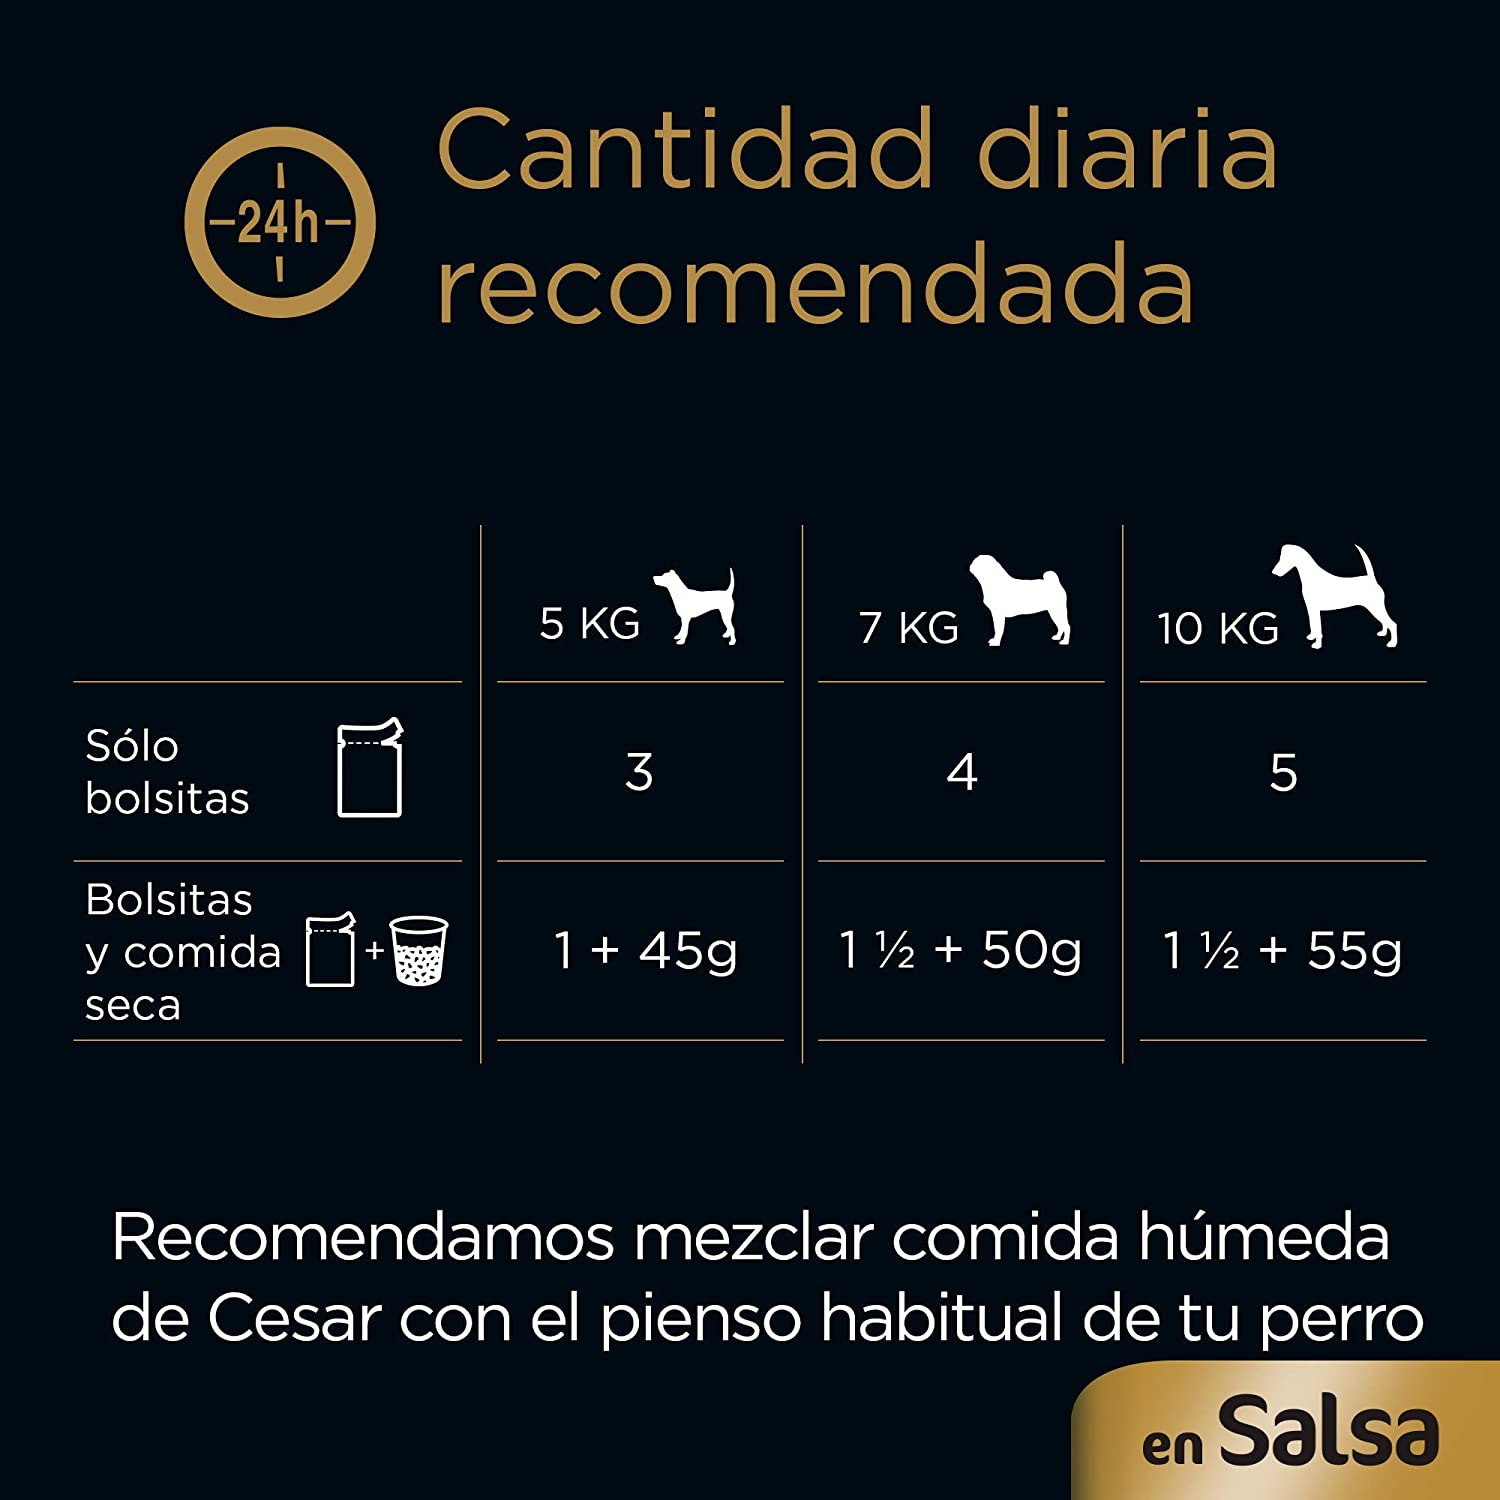  Cesar Multipack de 4 bolsitas de carnes mixtas para perro de 100g selección en salsa (Pack de 13) 